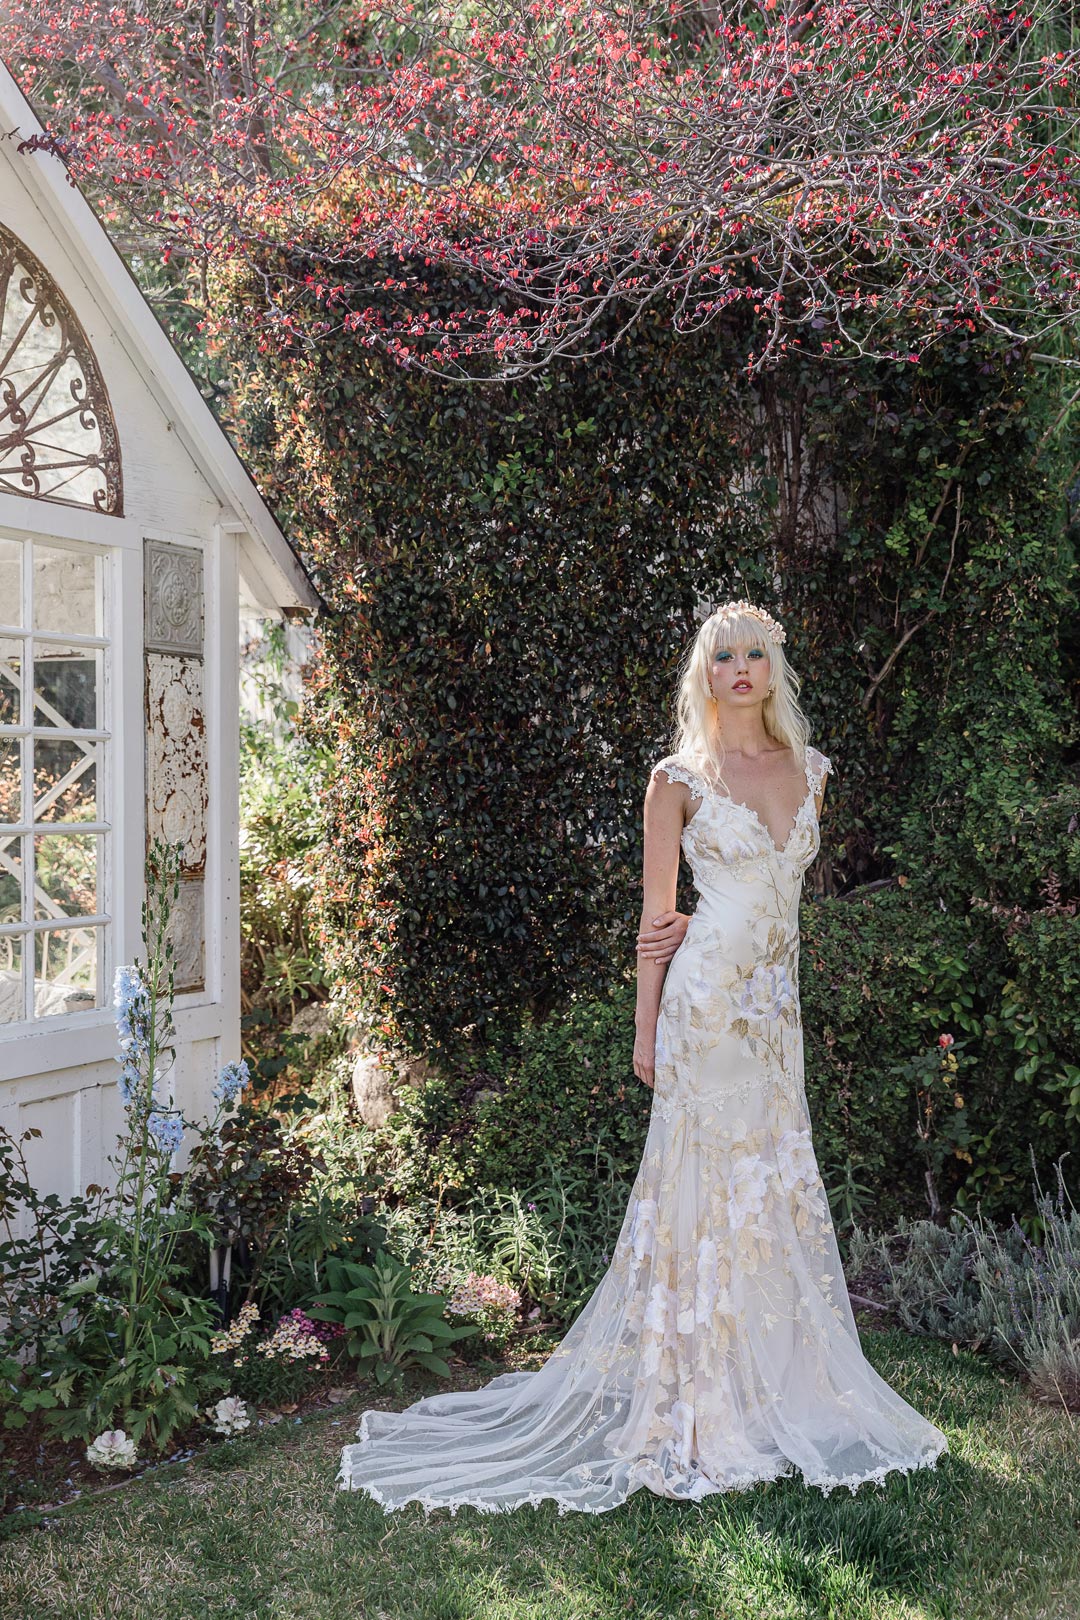 Model in Cherry Blossum Wedding Dress in Garden